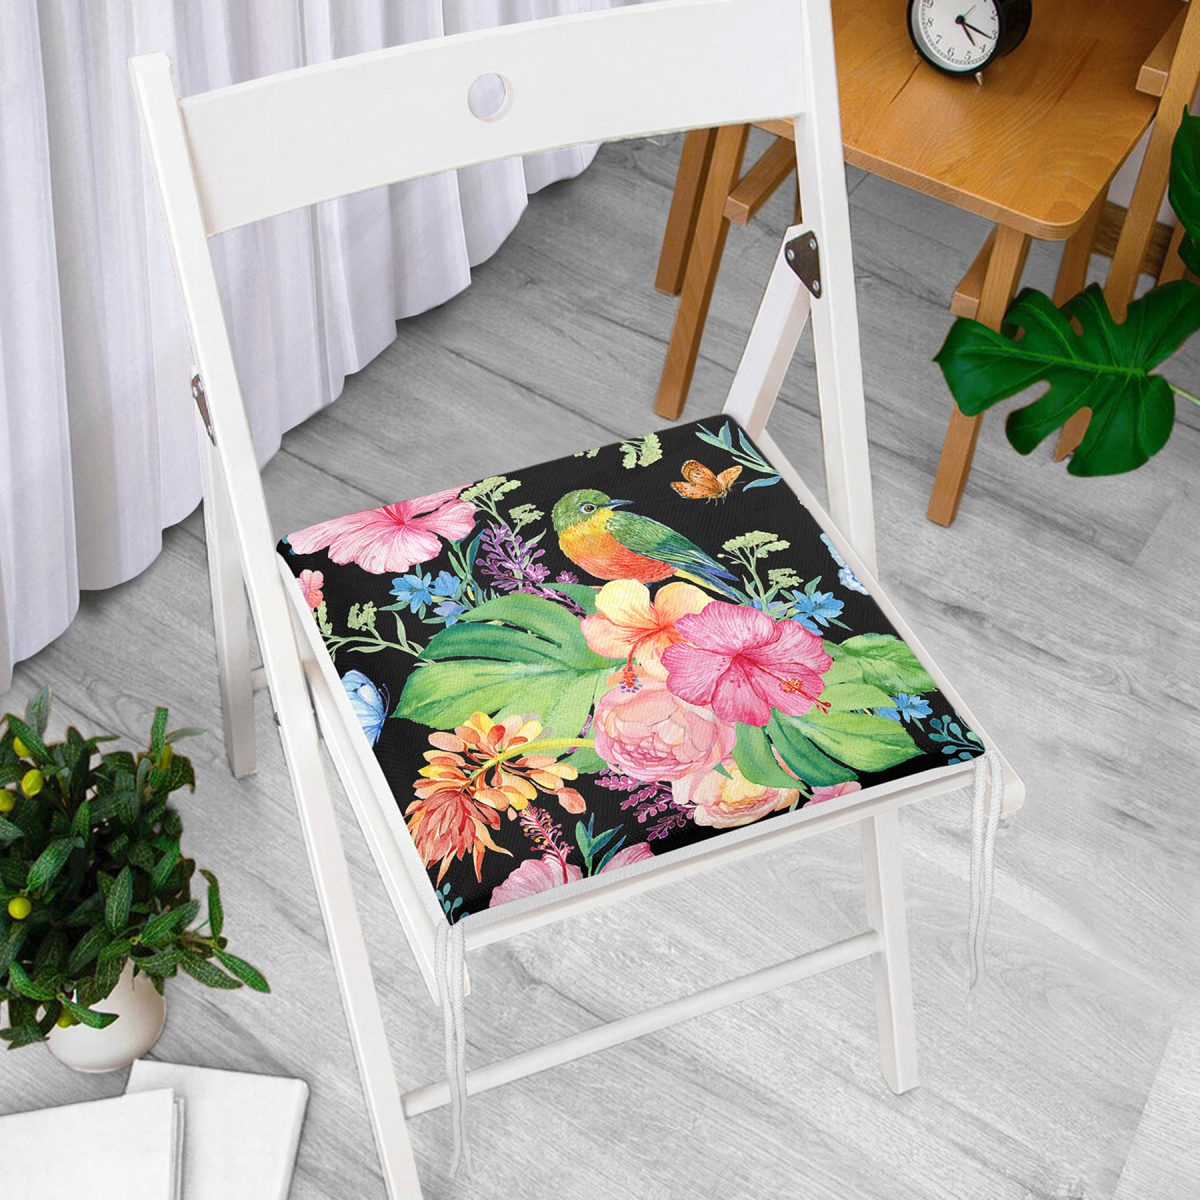 Watercolor Çiçek ve Kuş Motifli Özel Tasarım Fermuarlı Sandalye Minderi Realhomes